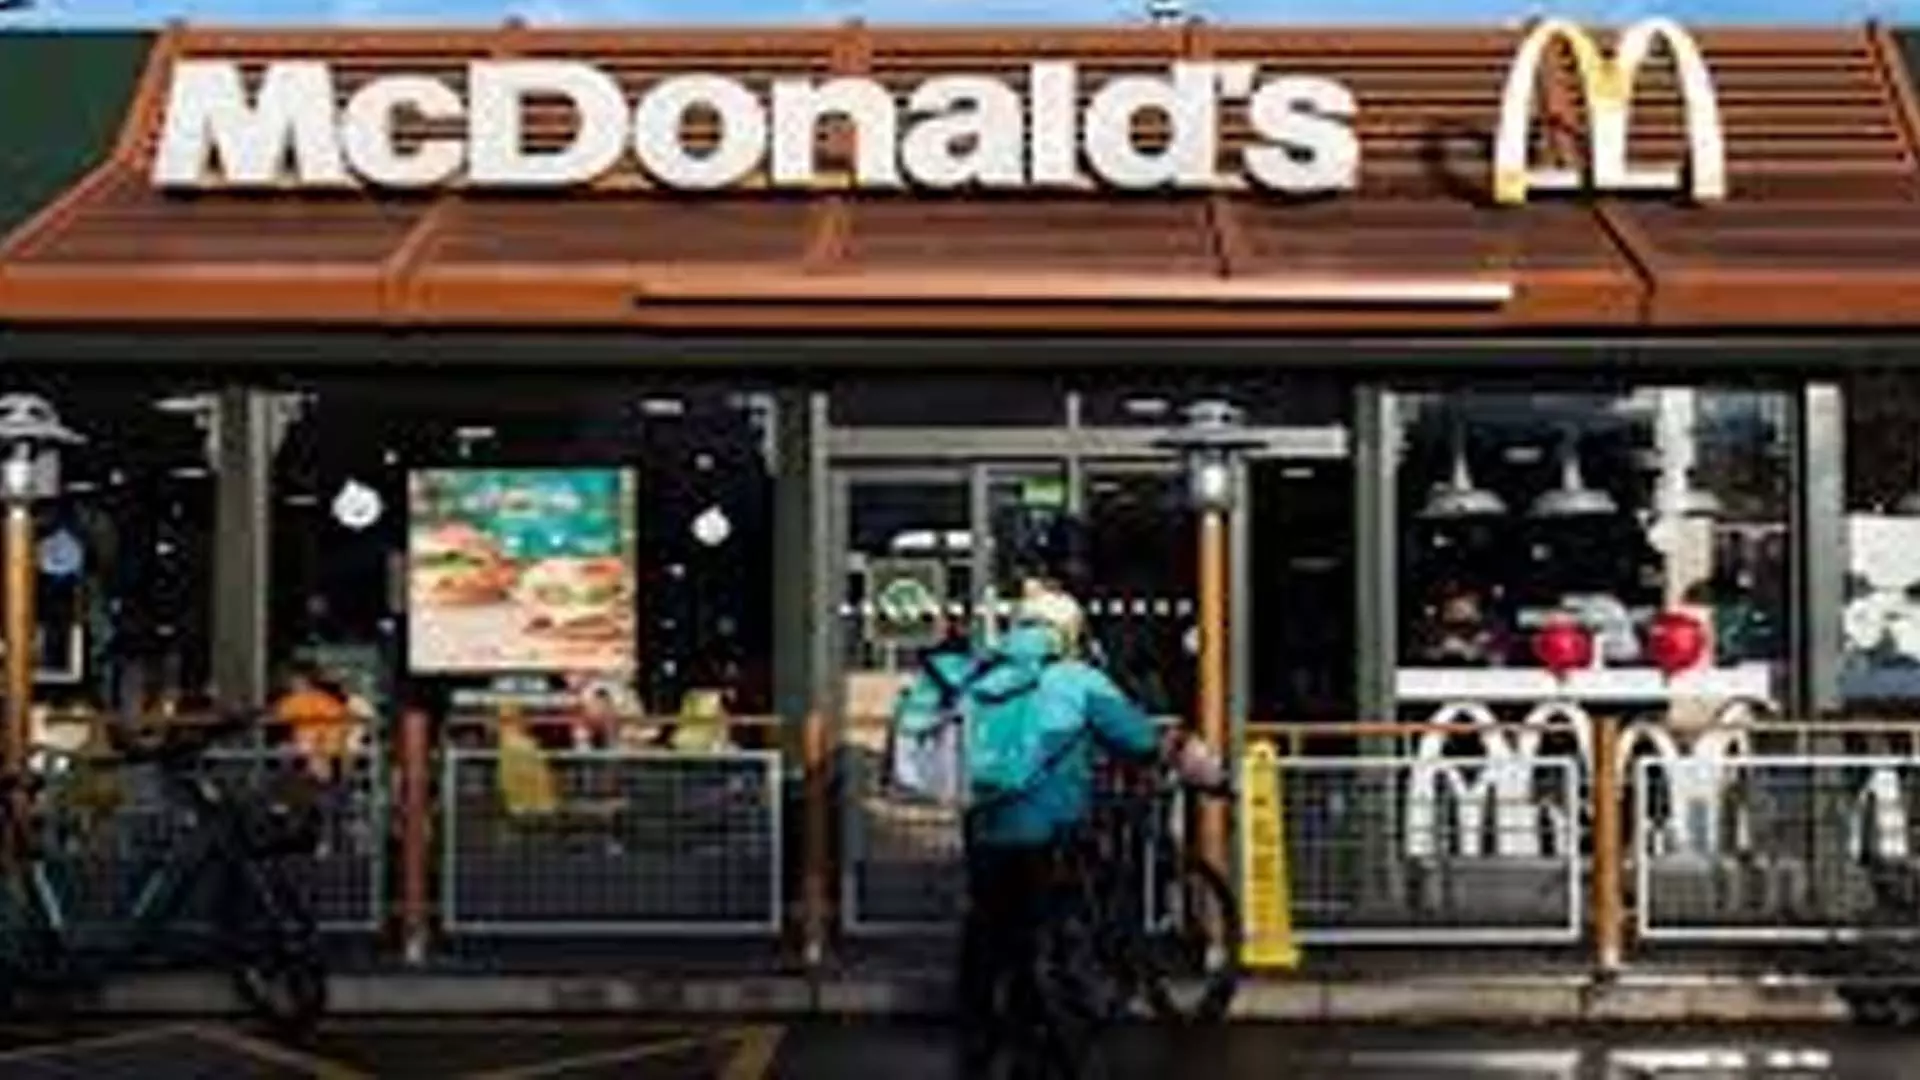 McDonalds:  मैकडॉनल्ड्स की बिक्री में तीन साल में पहली बार वैश्विक स्तर पर गिरावट